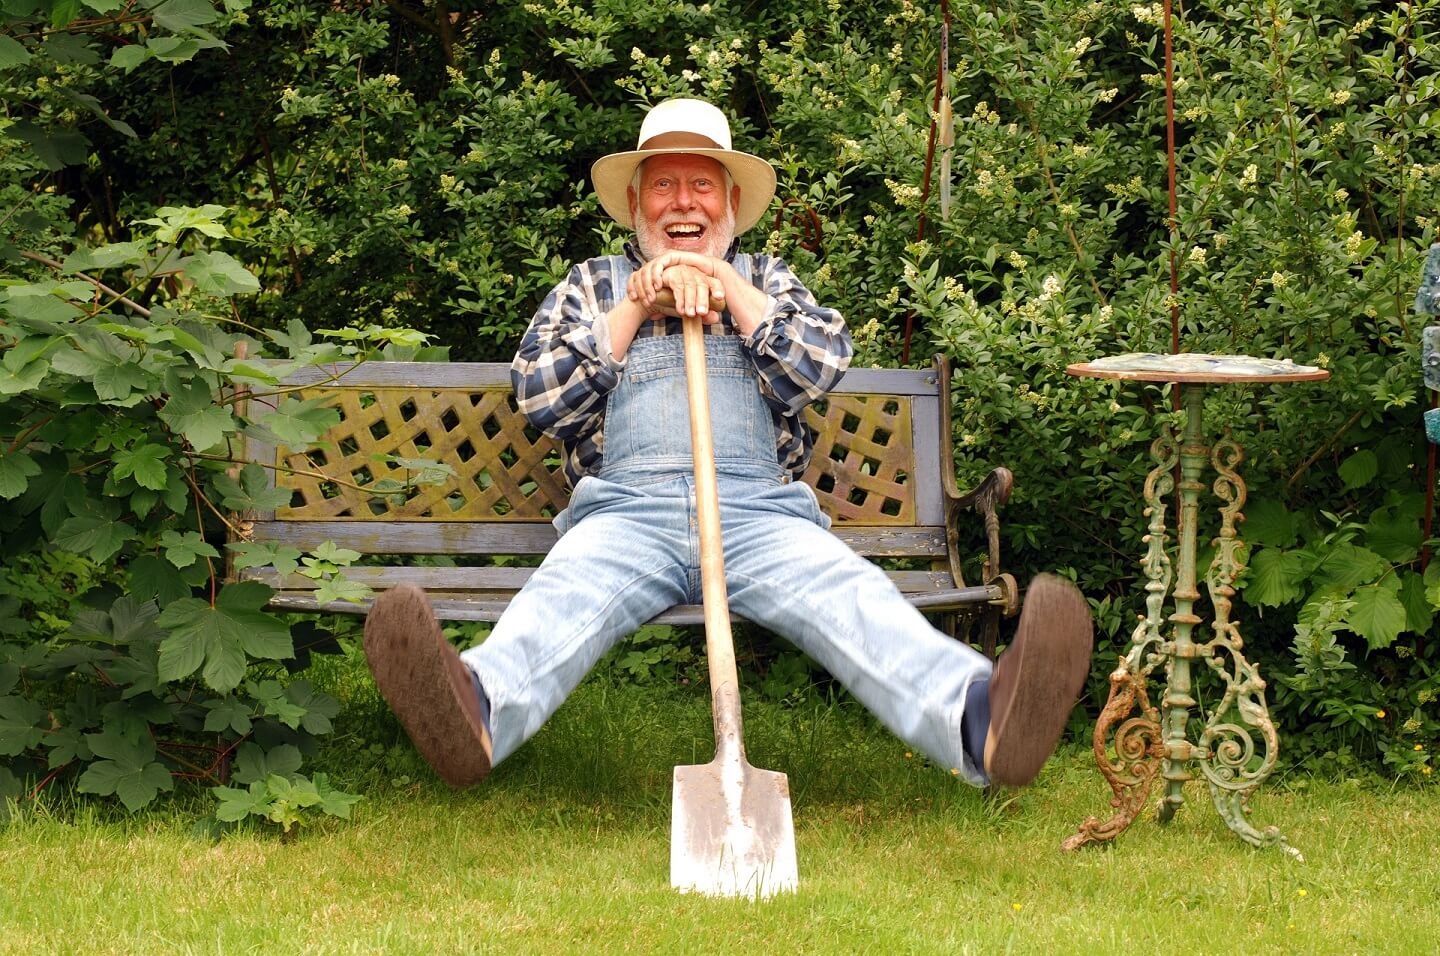 Rentner-Jobs: Älterer Herr sitzt mit Spaten auf Gartenbank